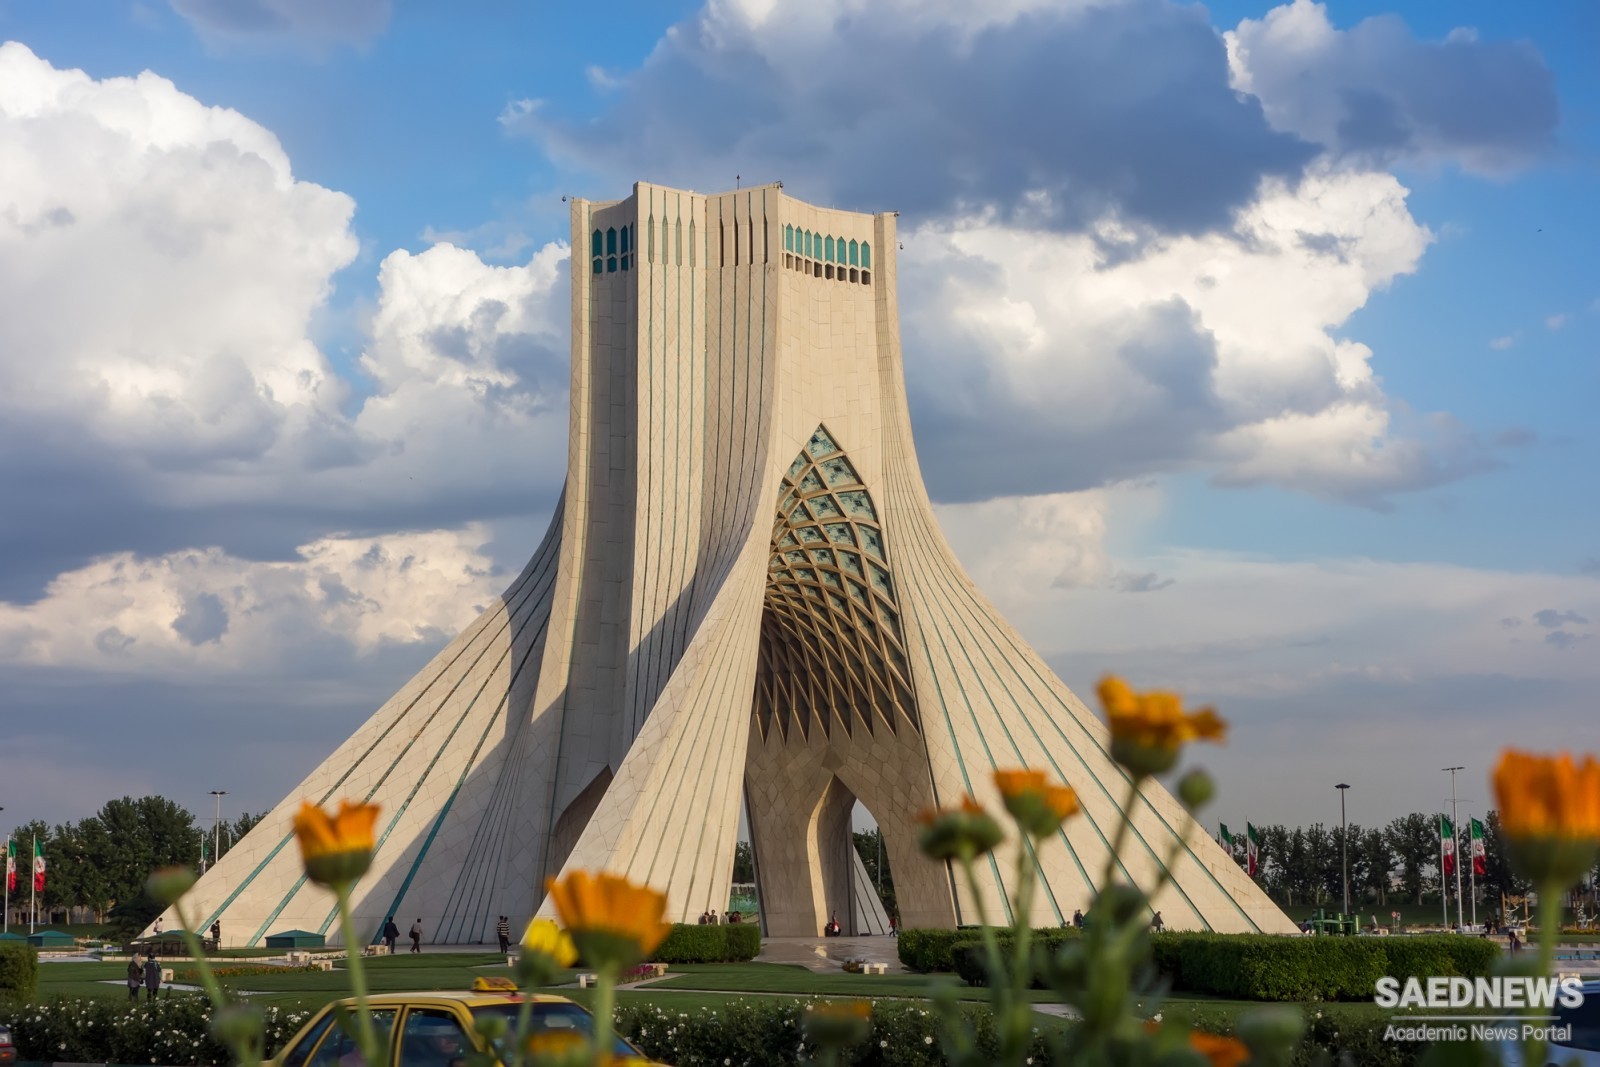 मिडिल ईस्ट में सबसे बड़े नवाचार पारिस्थितिकी तंत्र के लिए ईरान जन्मभूमि